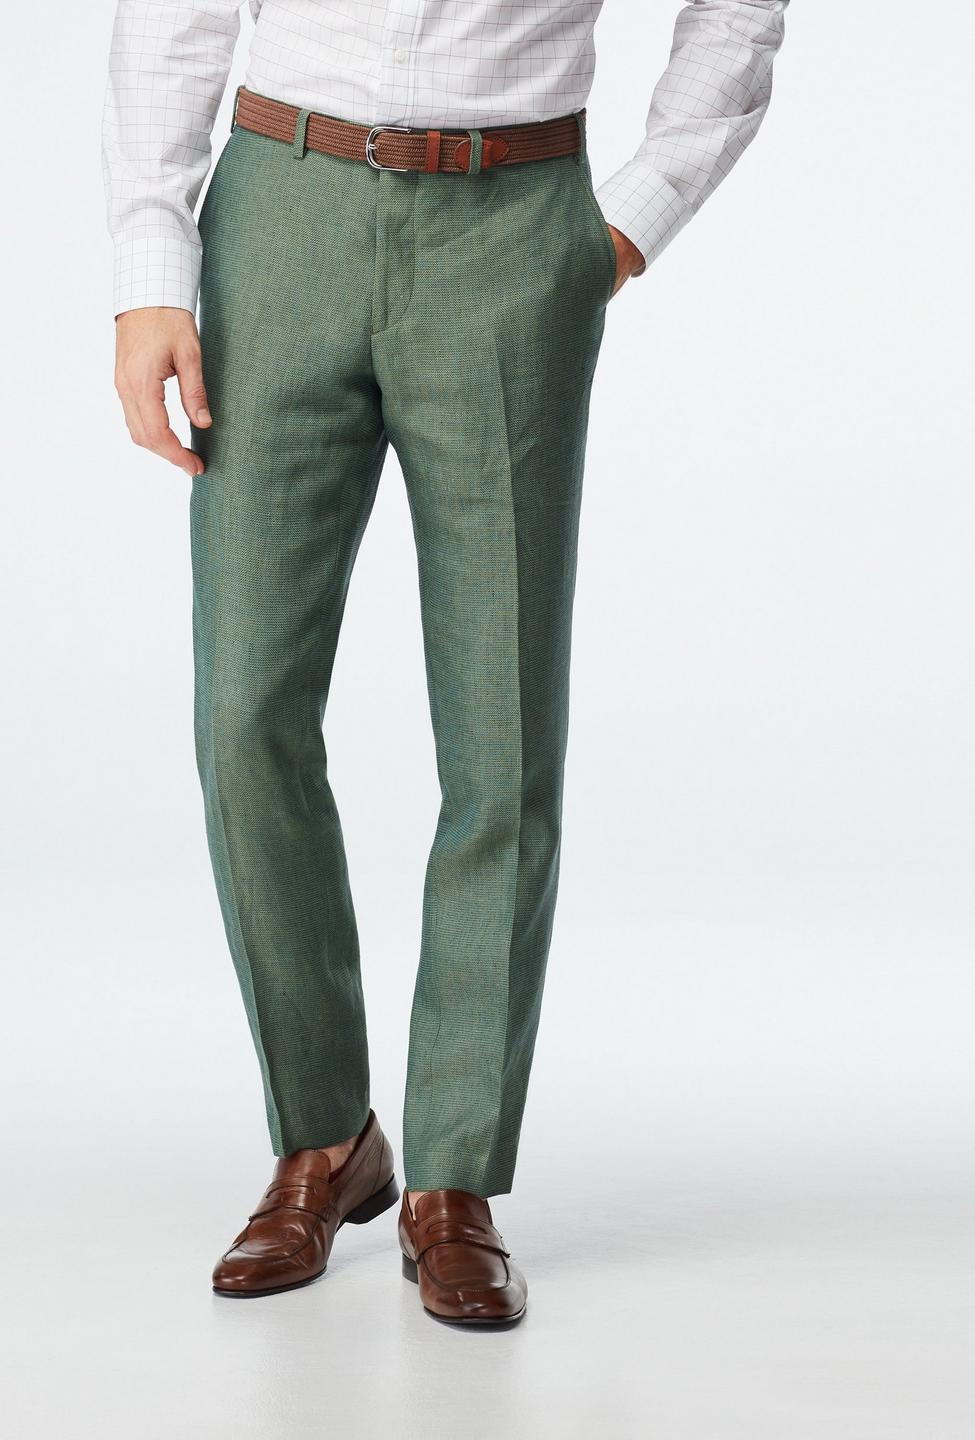 Men's Dark Green WOOLRICH 5 Pocket Pant 40X32 - Walmart.com